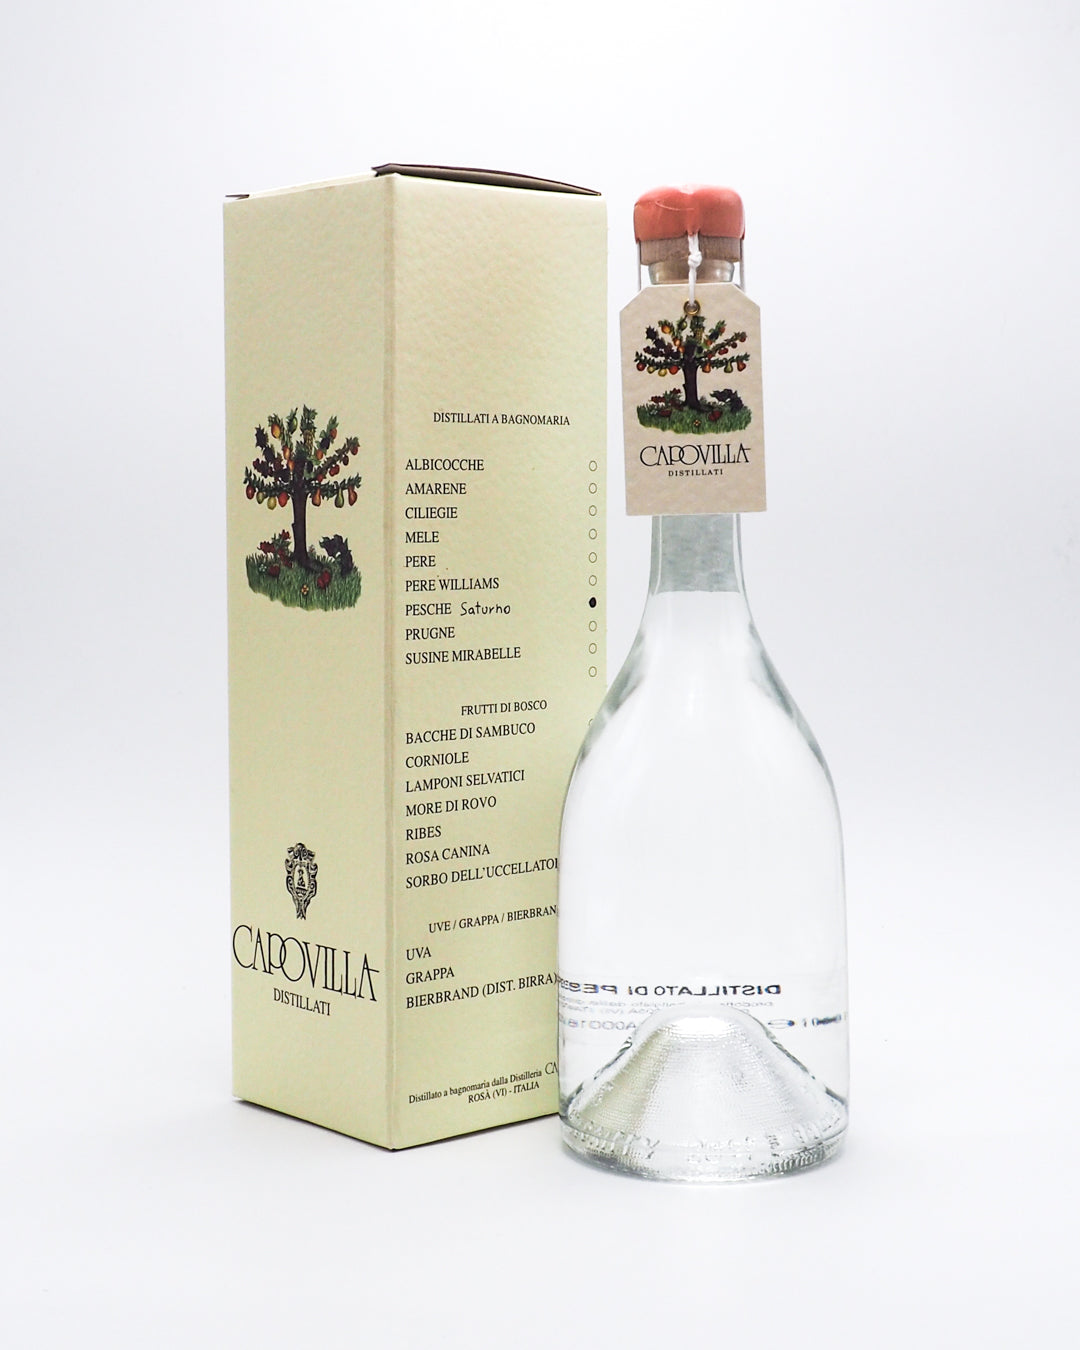 distillato-di-pesche-saturno-capovilla-41-50-cl